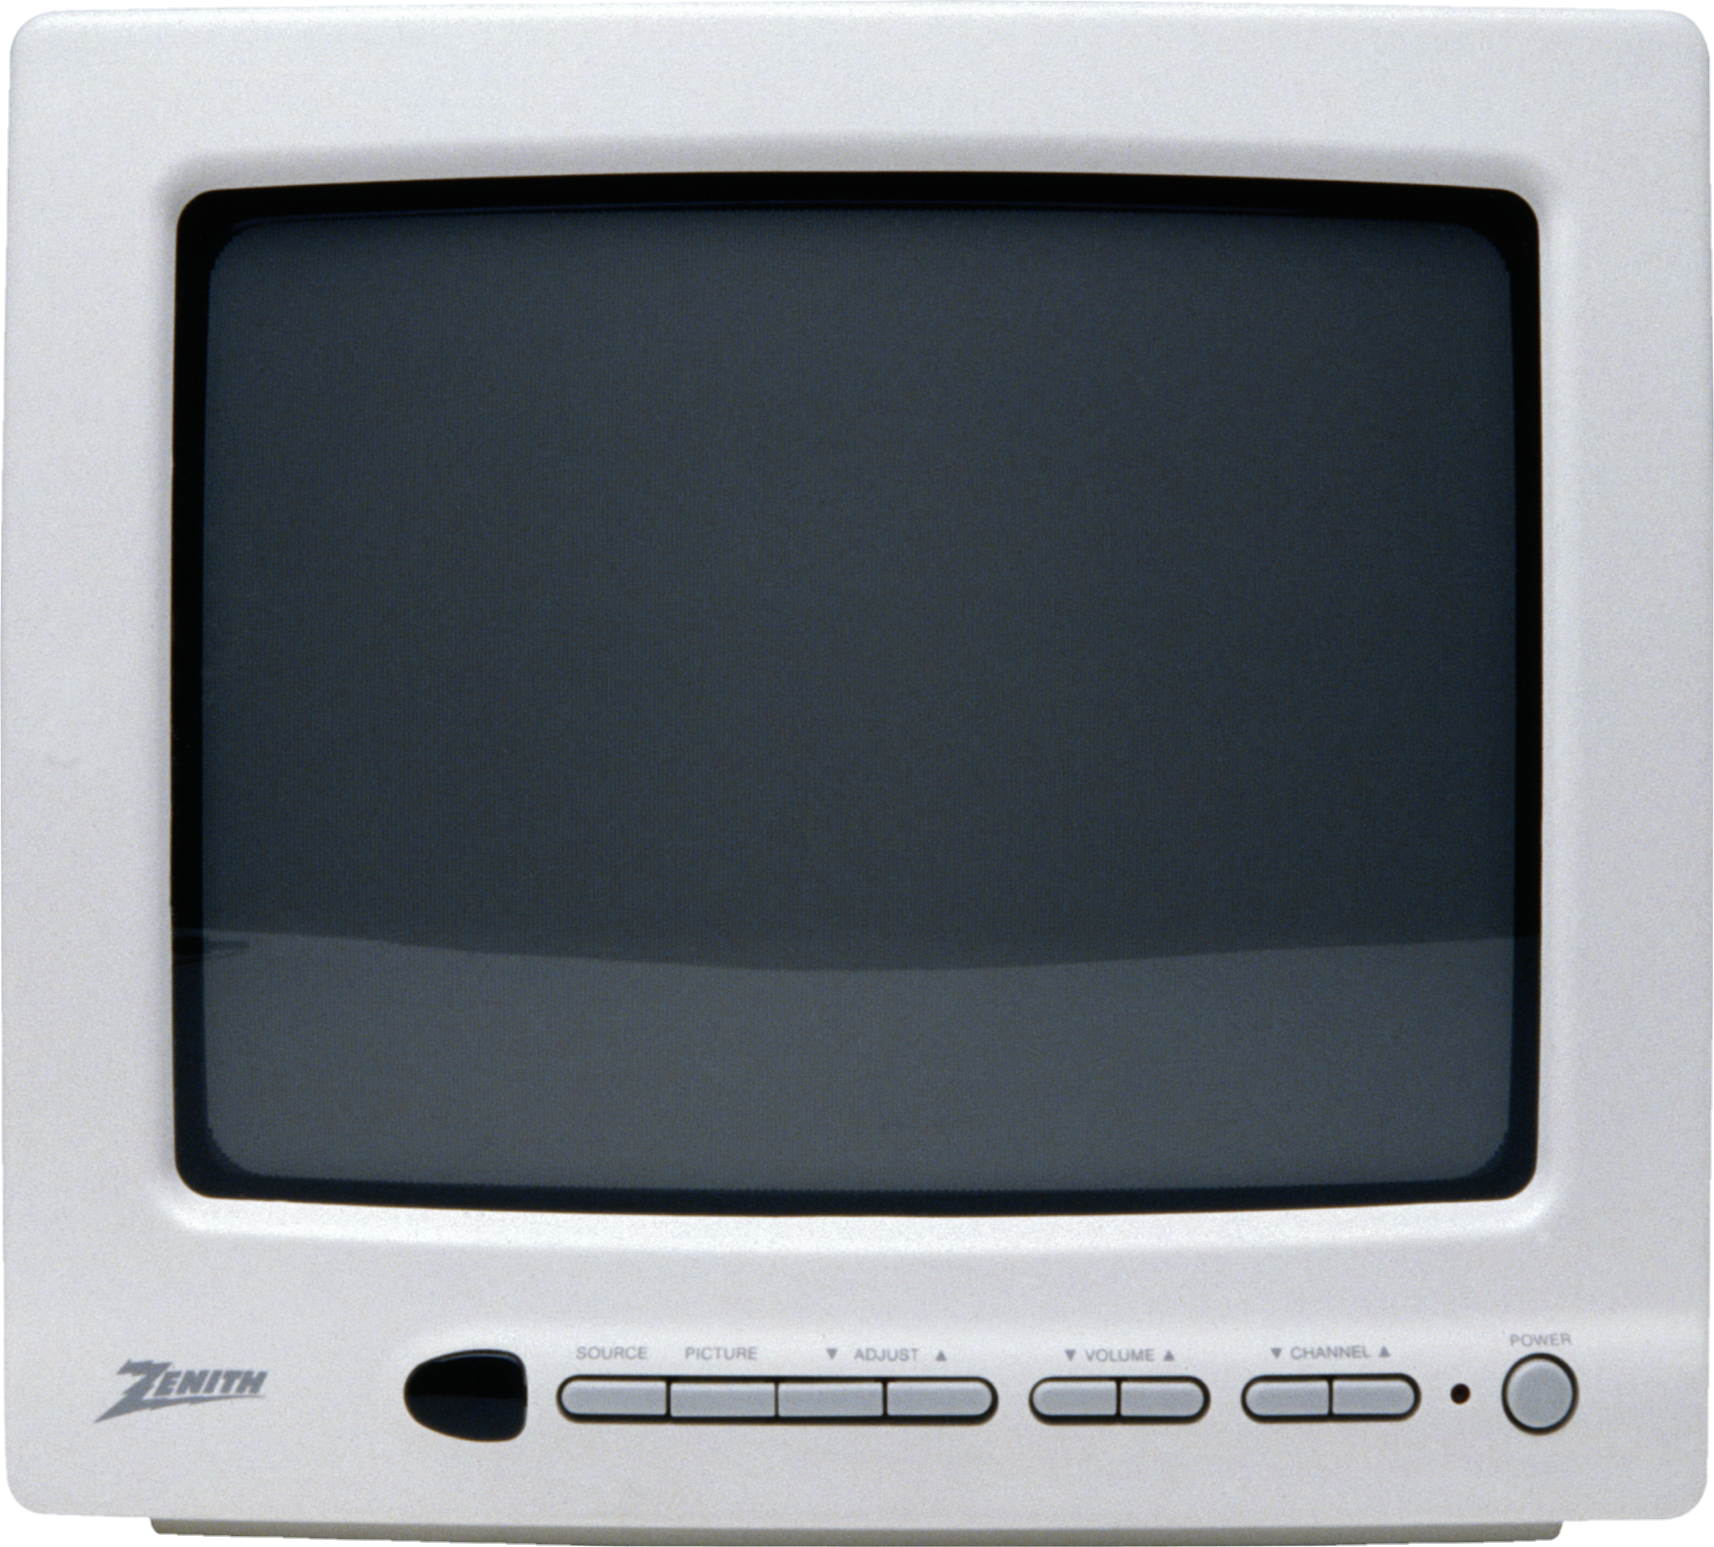 TV-22